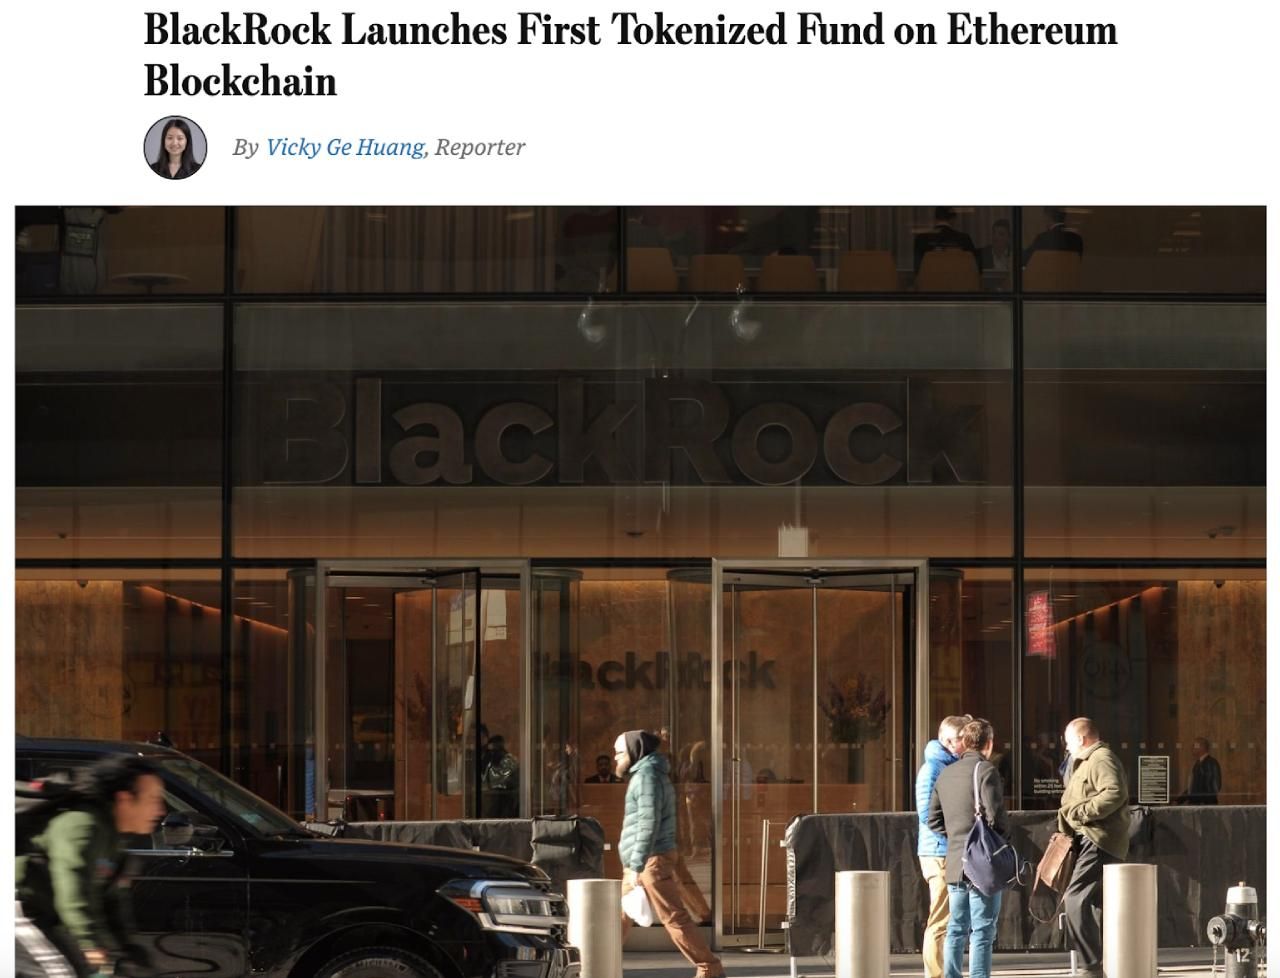 BlackRock khởi tạo "Quỹ đầu tư tài sản token hoá" đầu tiên của mình trên Ethereum